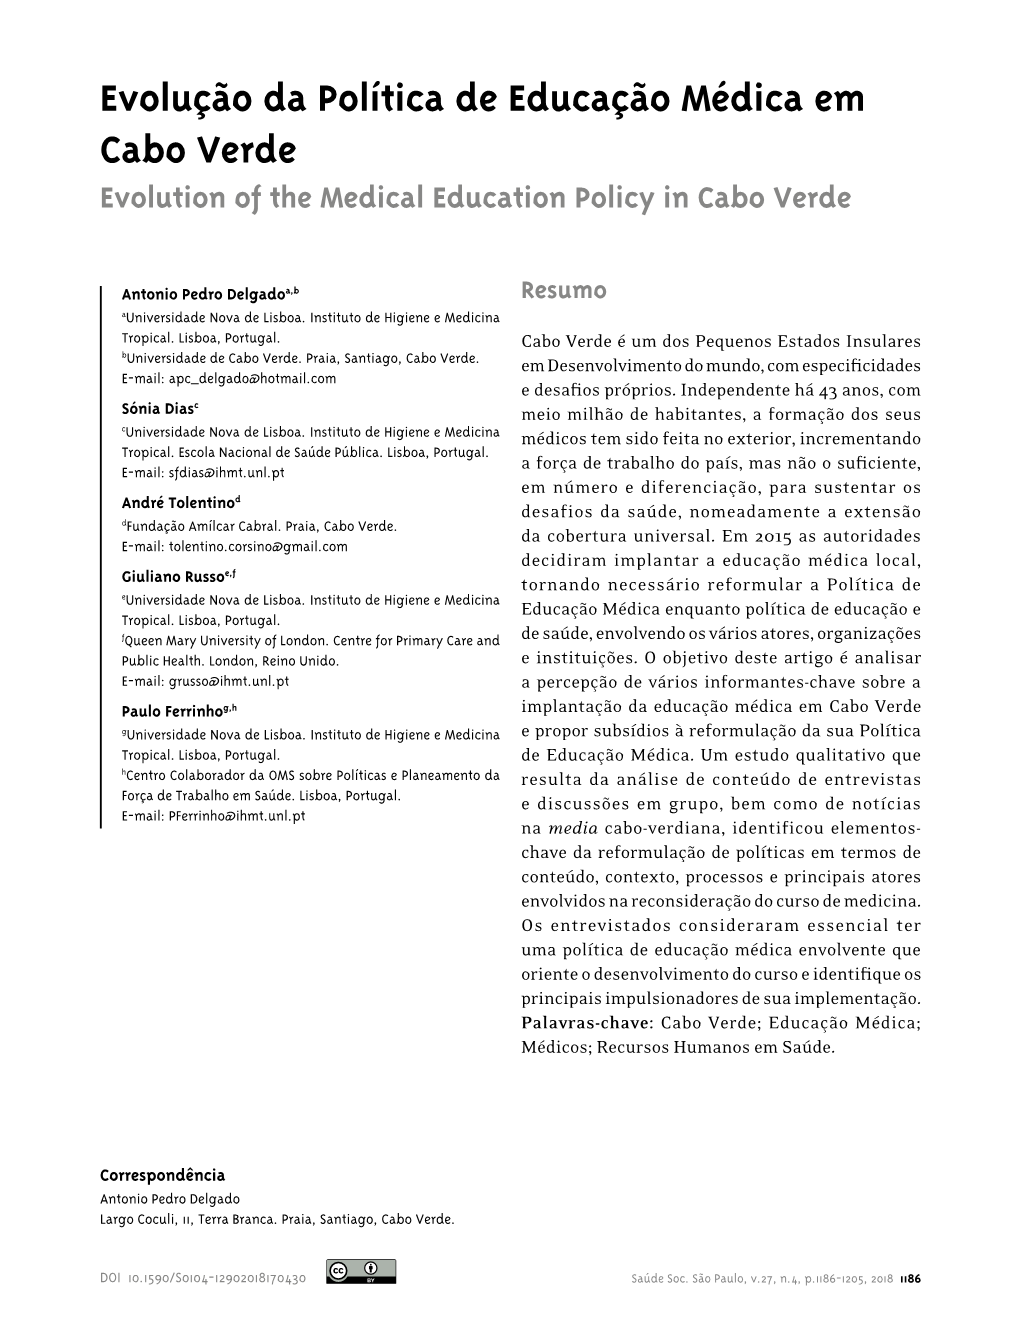 Evolução Da Política De Educação Médica Em Cabo Verde Evolution of the Medical Education Policy in Cabo Verde